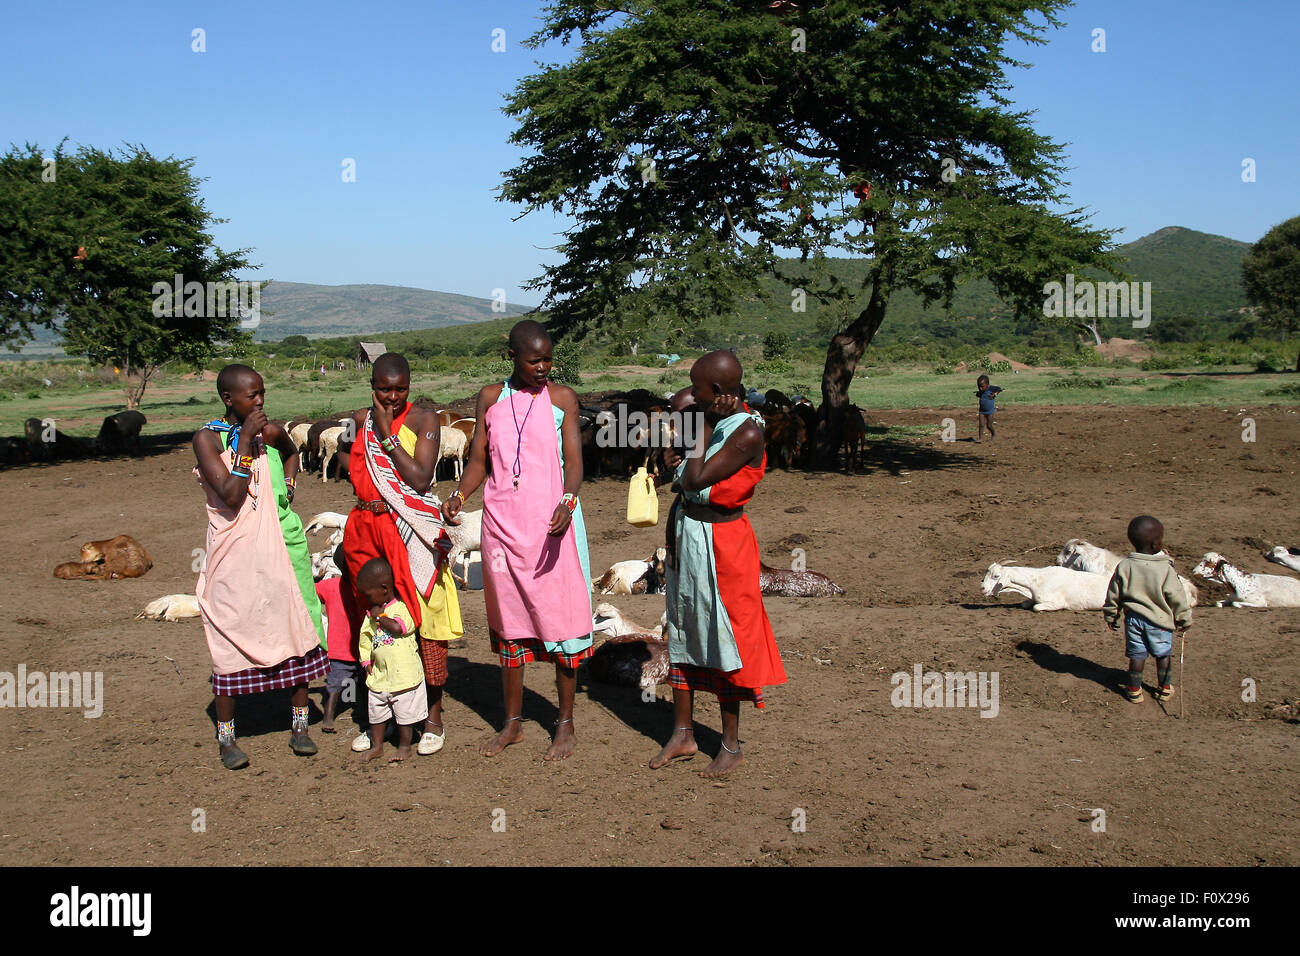 Groupe des pays d'Afrique les filles et les enfants de la tribu Masai au Kenya, montrer leurs vêtements traditionnels Banque D'Images